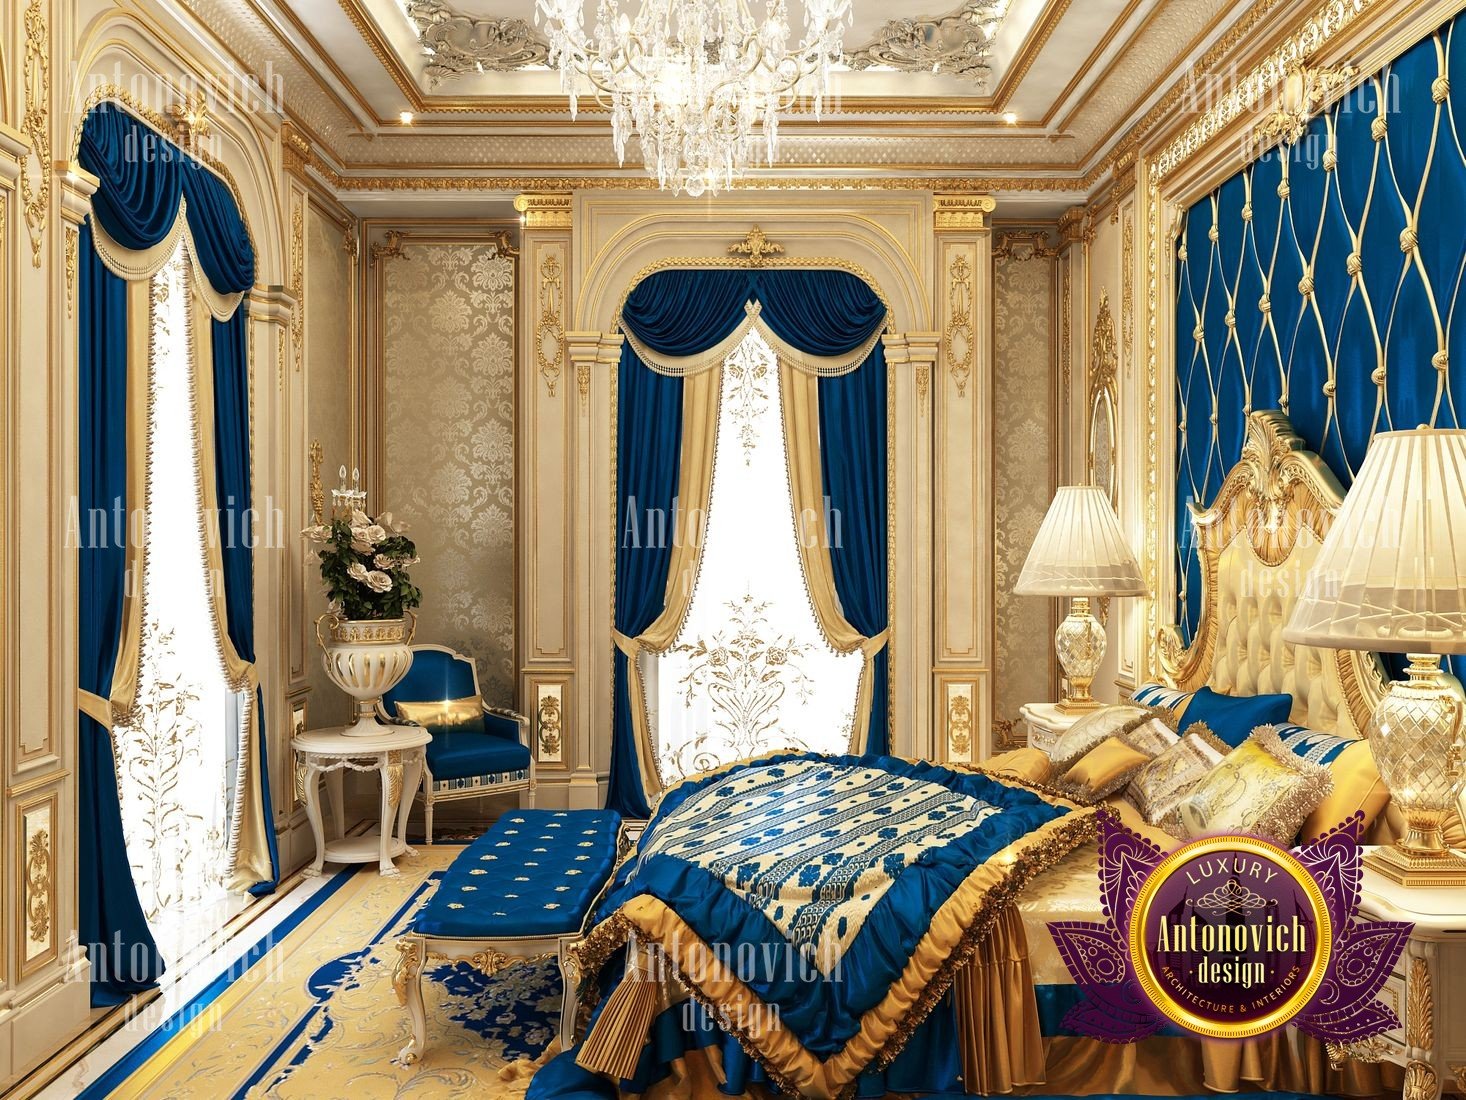 Bedrooms interior design Dubai